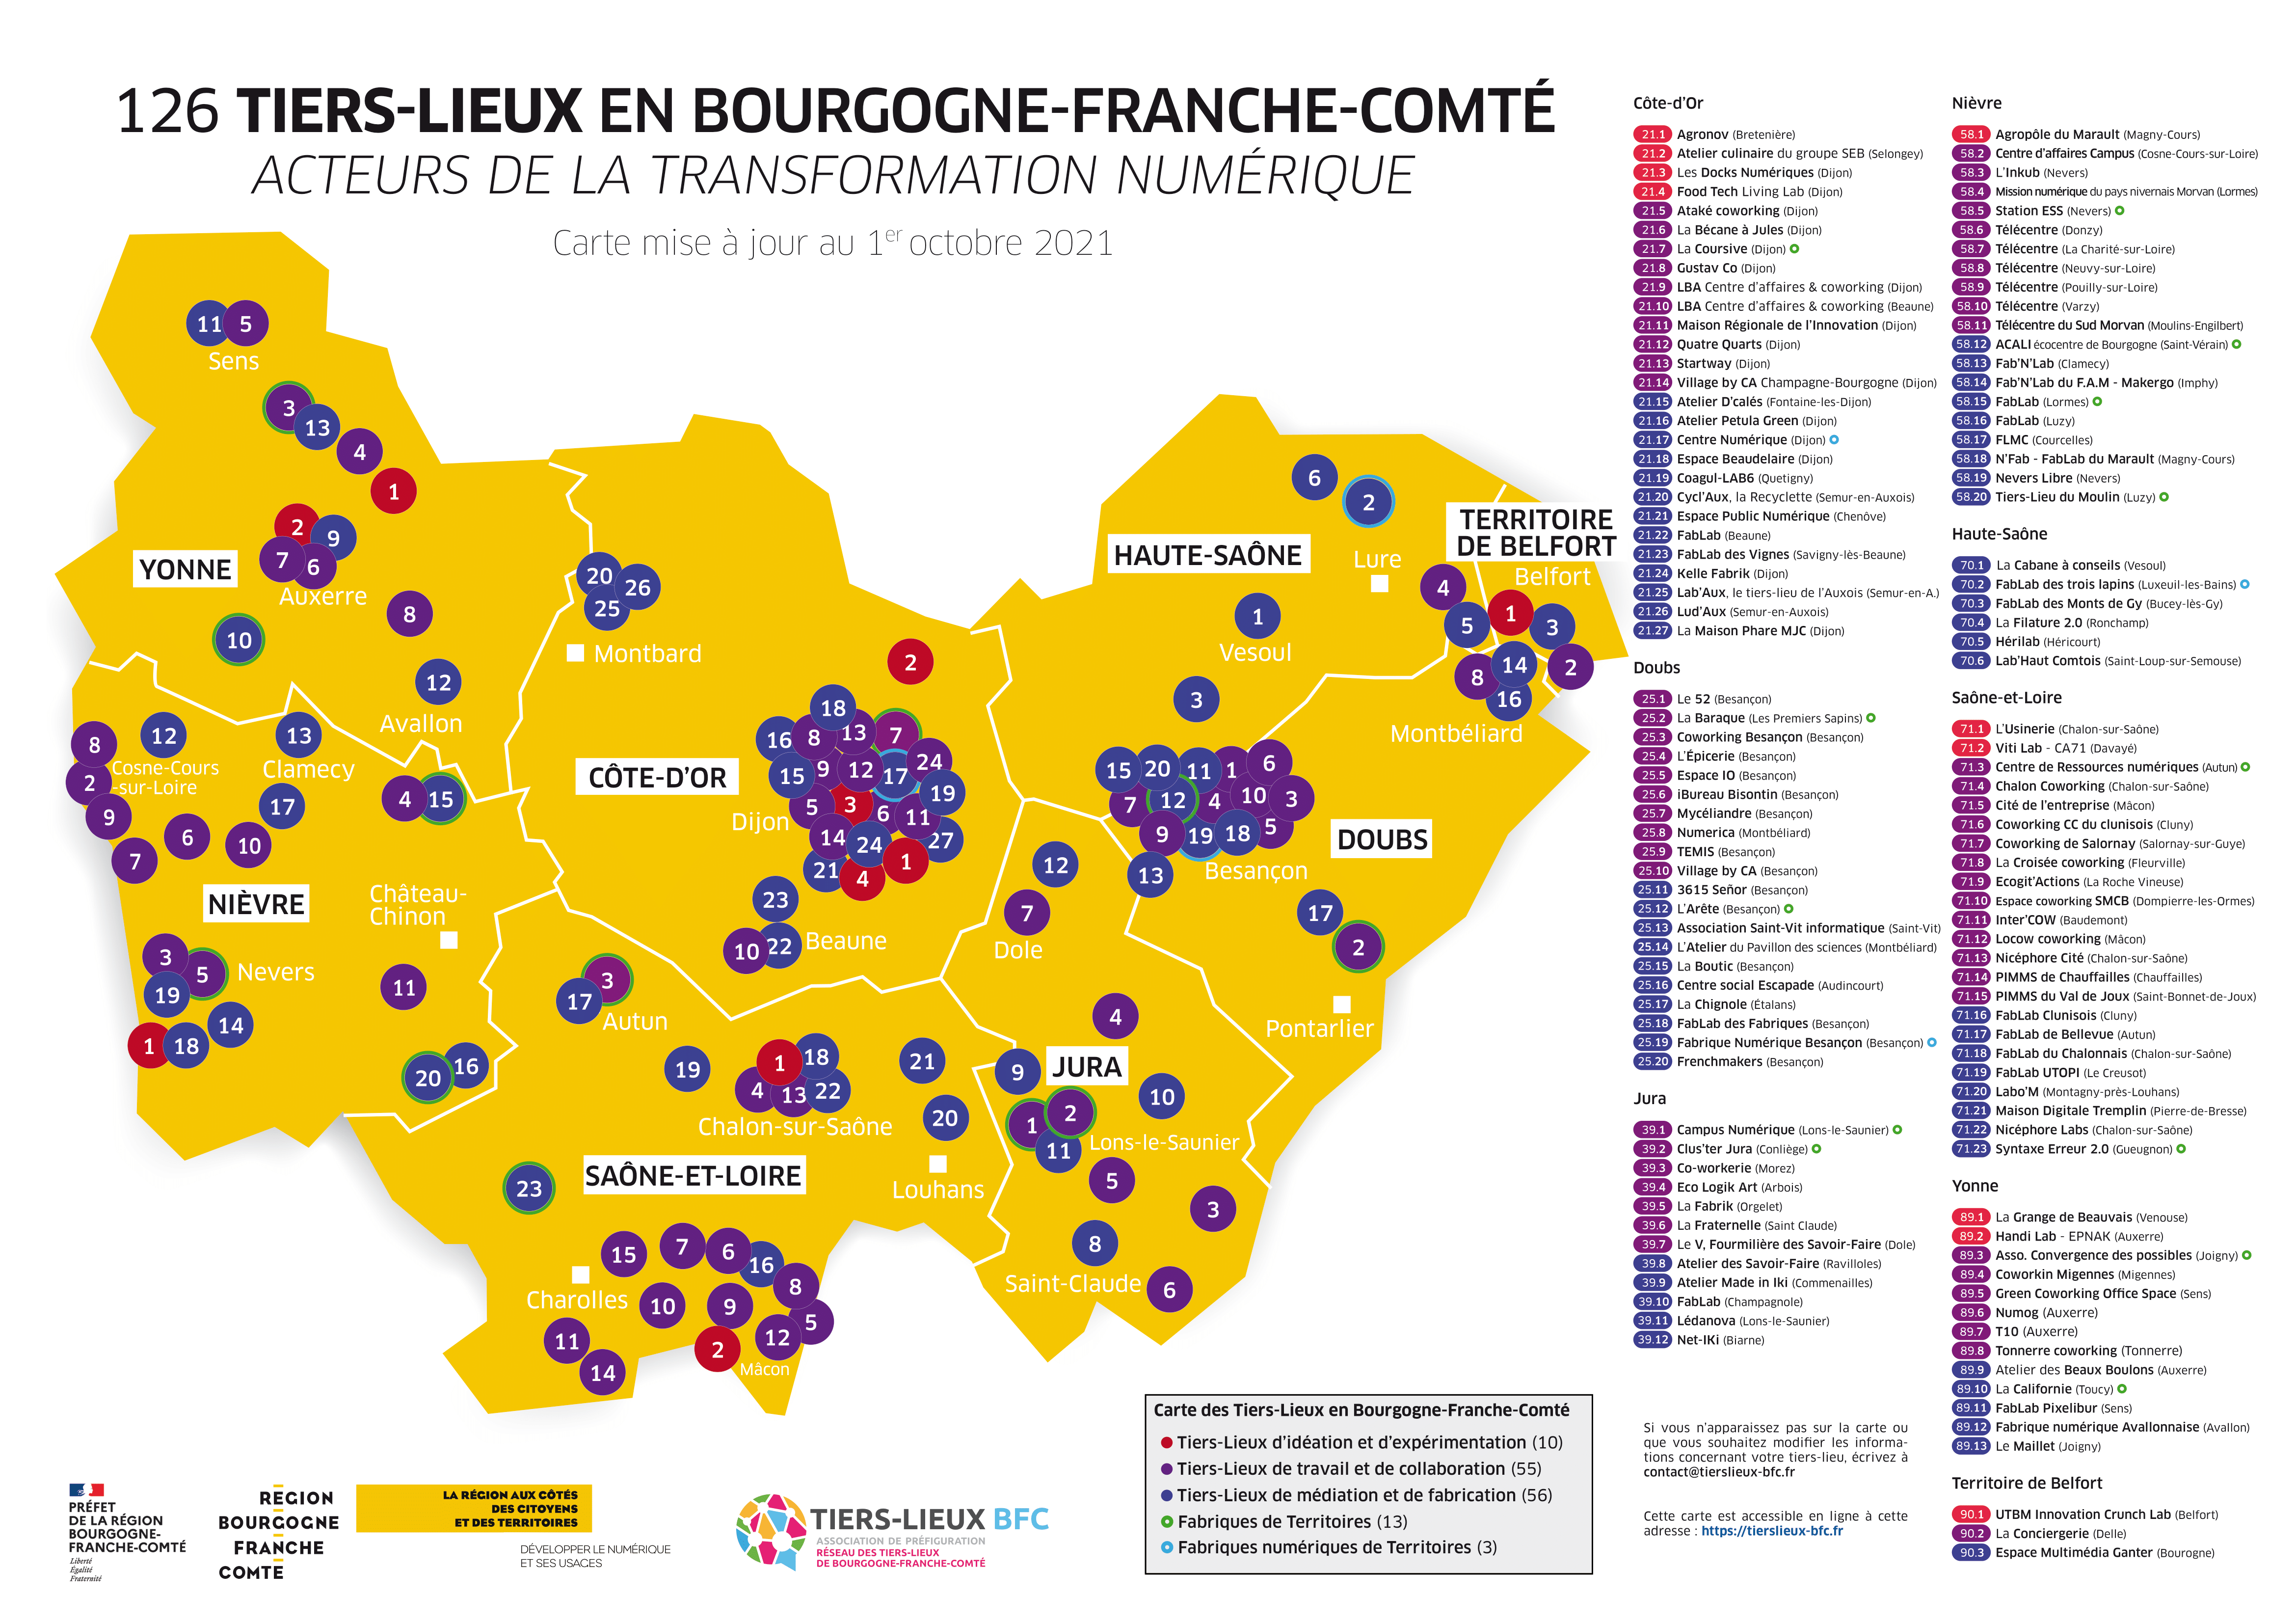 Poster - Carte des Tiers-Lieux BFC 09-2021-1